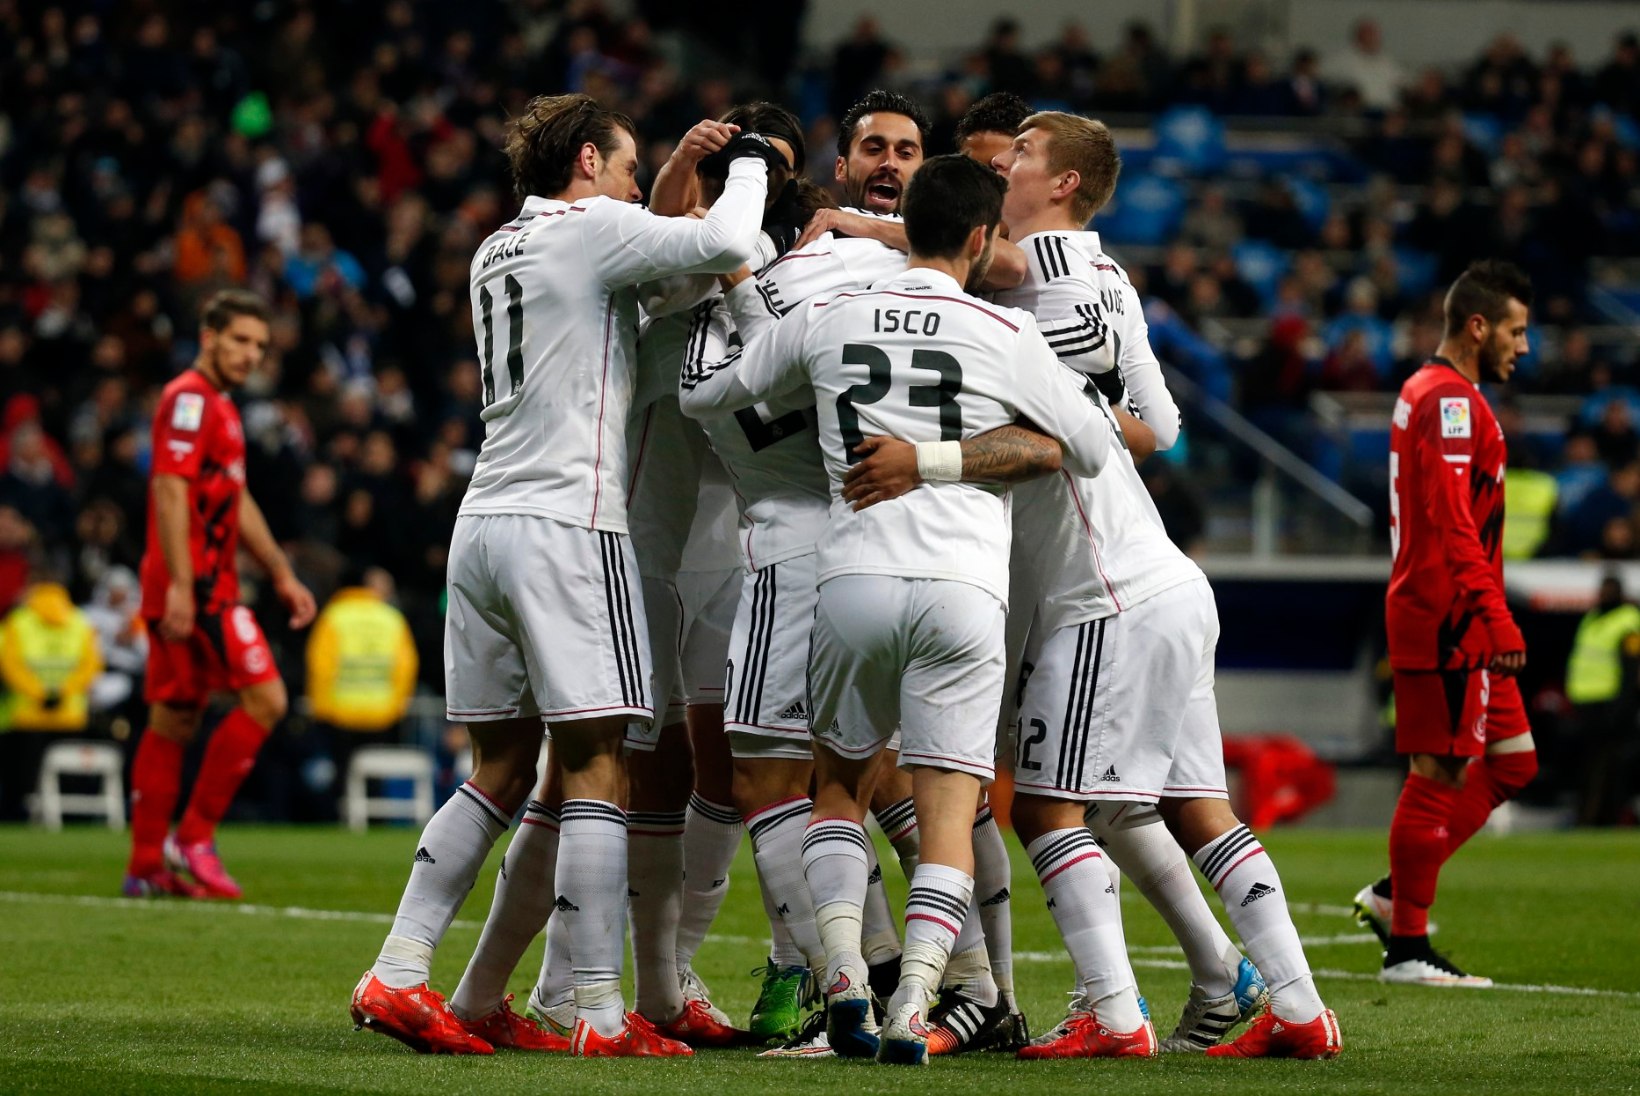 GALERII: Madridi Real võitis, kuid kaotas staari